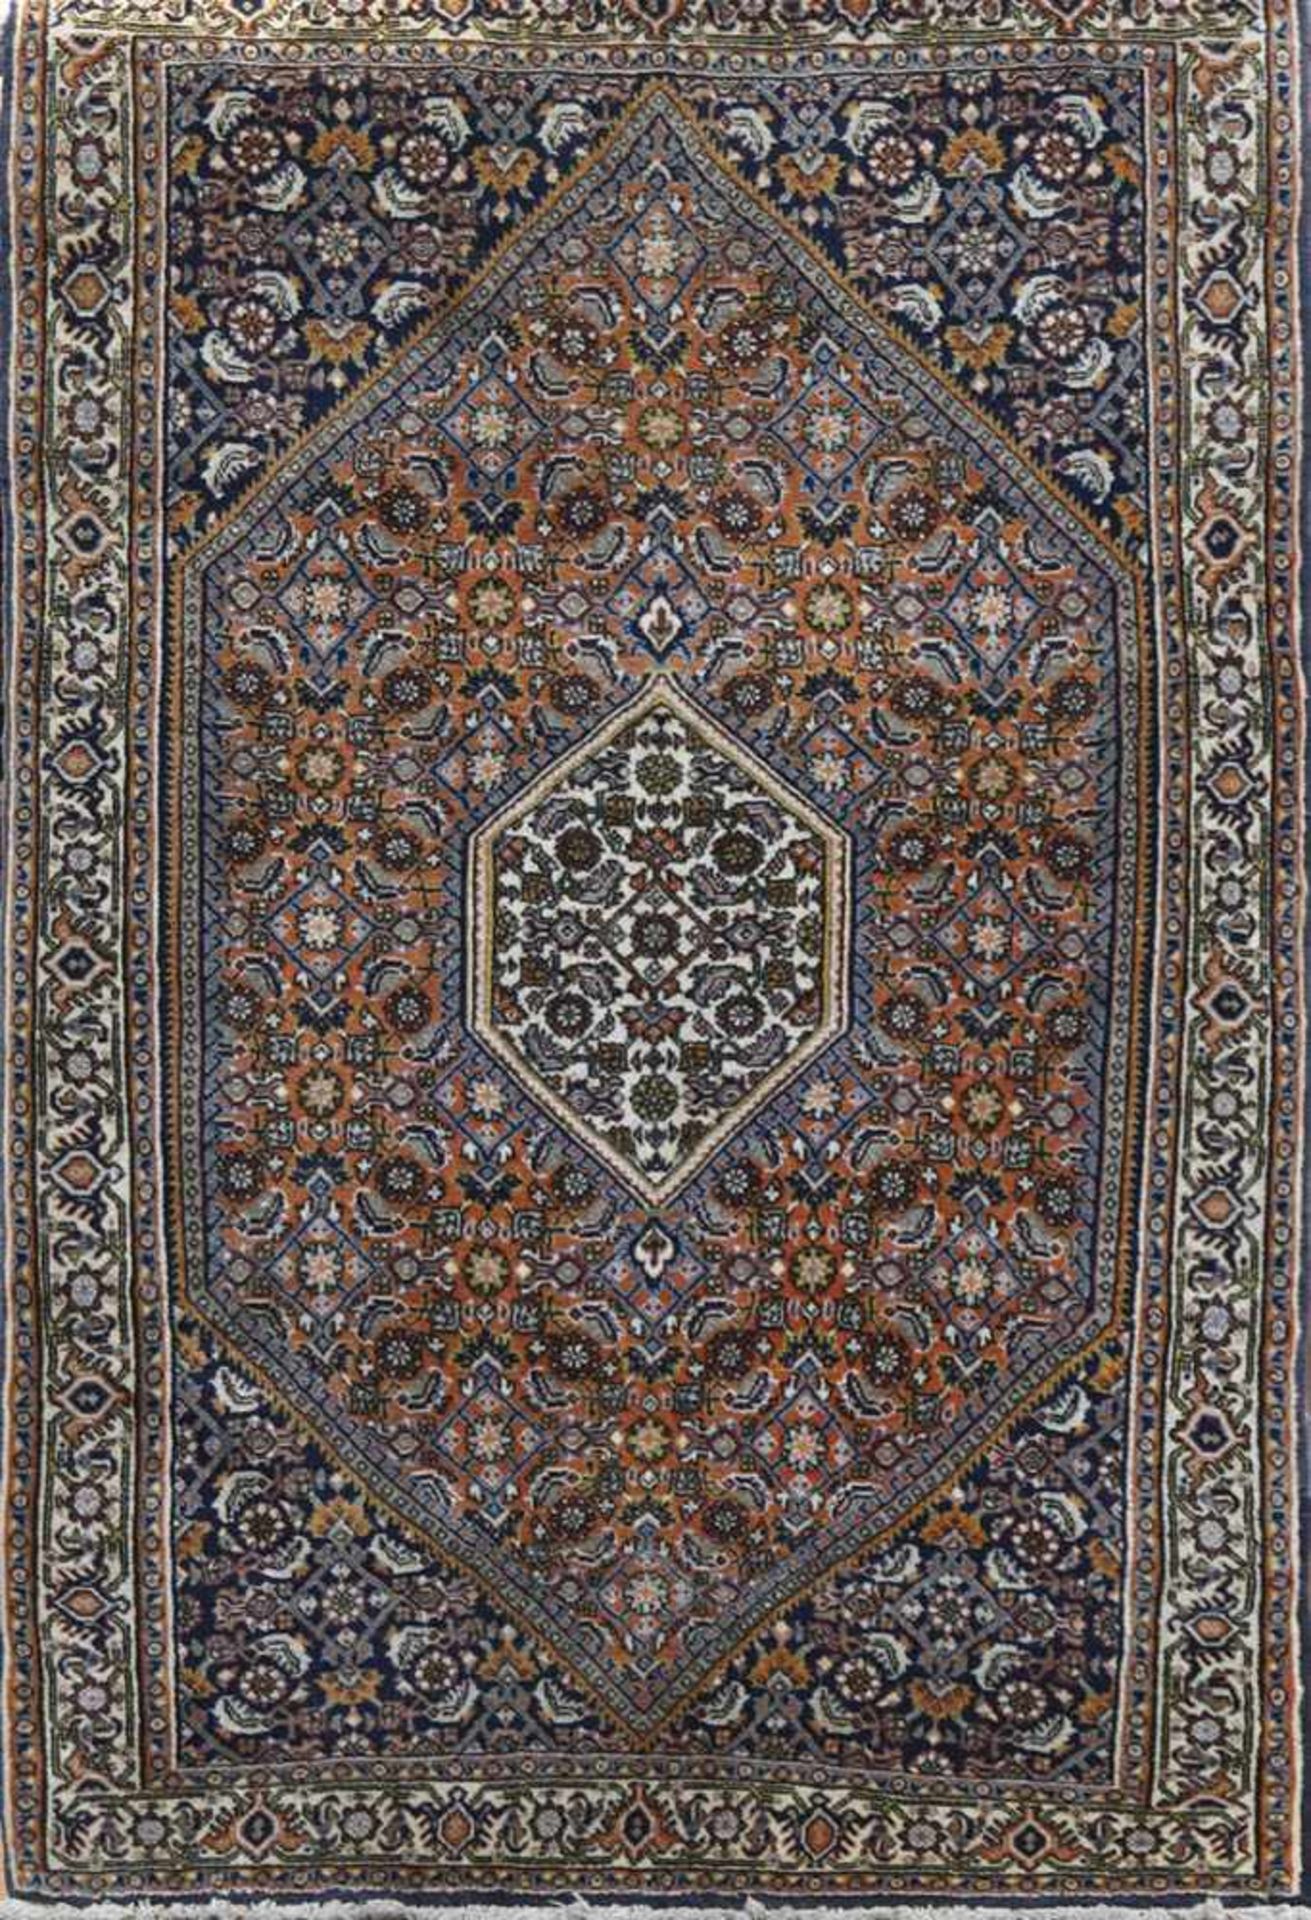 Bidjar, Persien, rot-/blaugrundig, mit zentralem Medaillon und floralen Motiven, guterZustand,